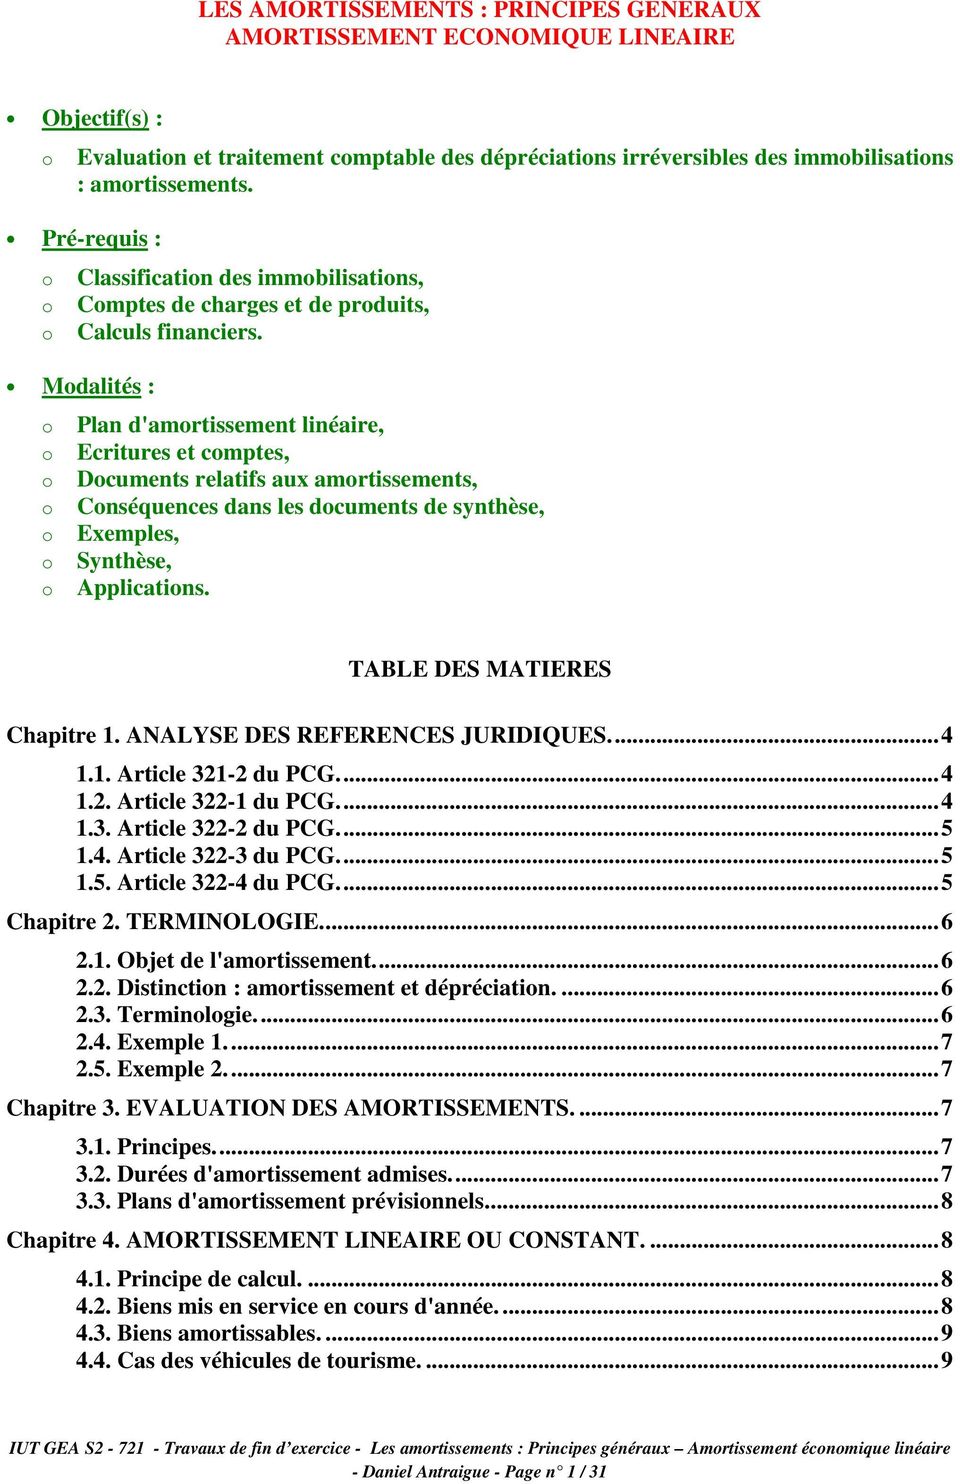 Mdalités : Plan d'amrtissement linéaire, Ecritures et cmptes, Dcuments relatifs aux amrtissements, Cnséquences dans les dcuments de synthèse, Exemples, Synthèse, Applicatins.